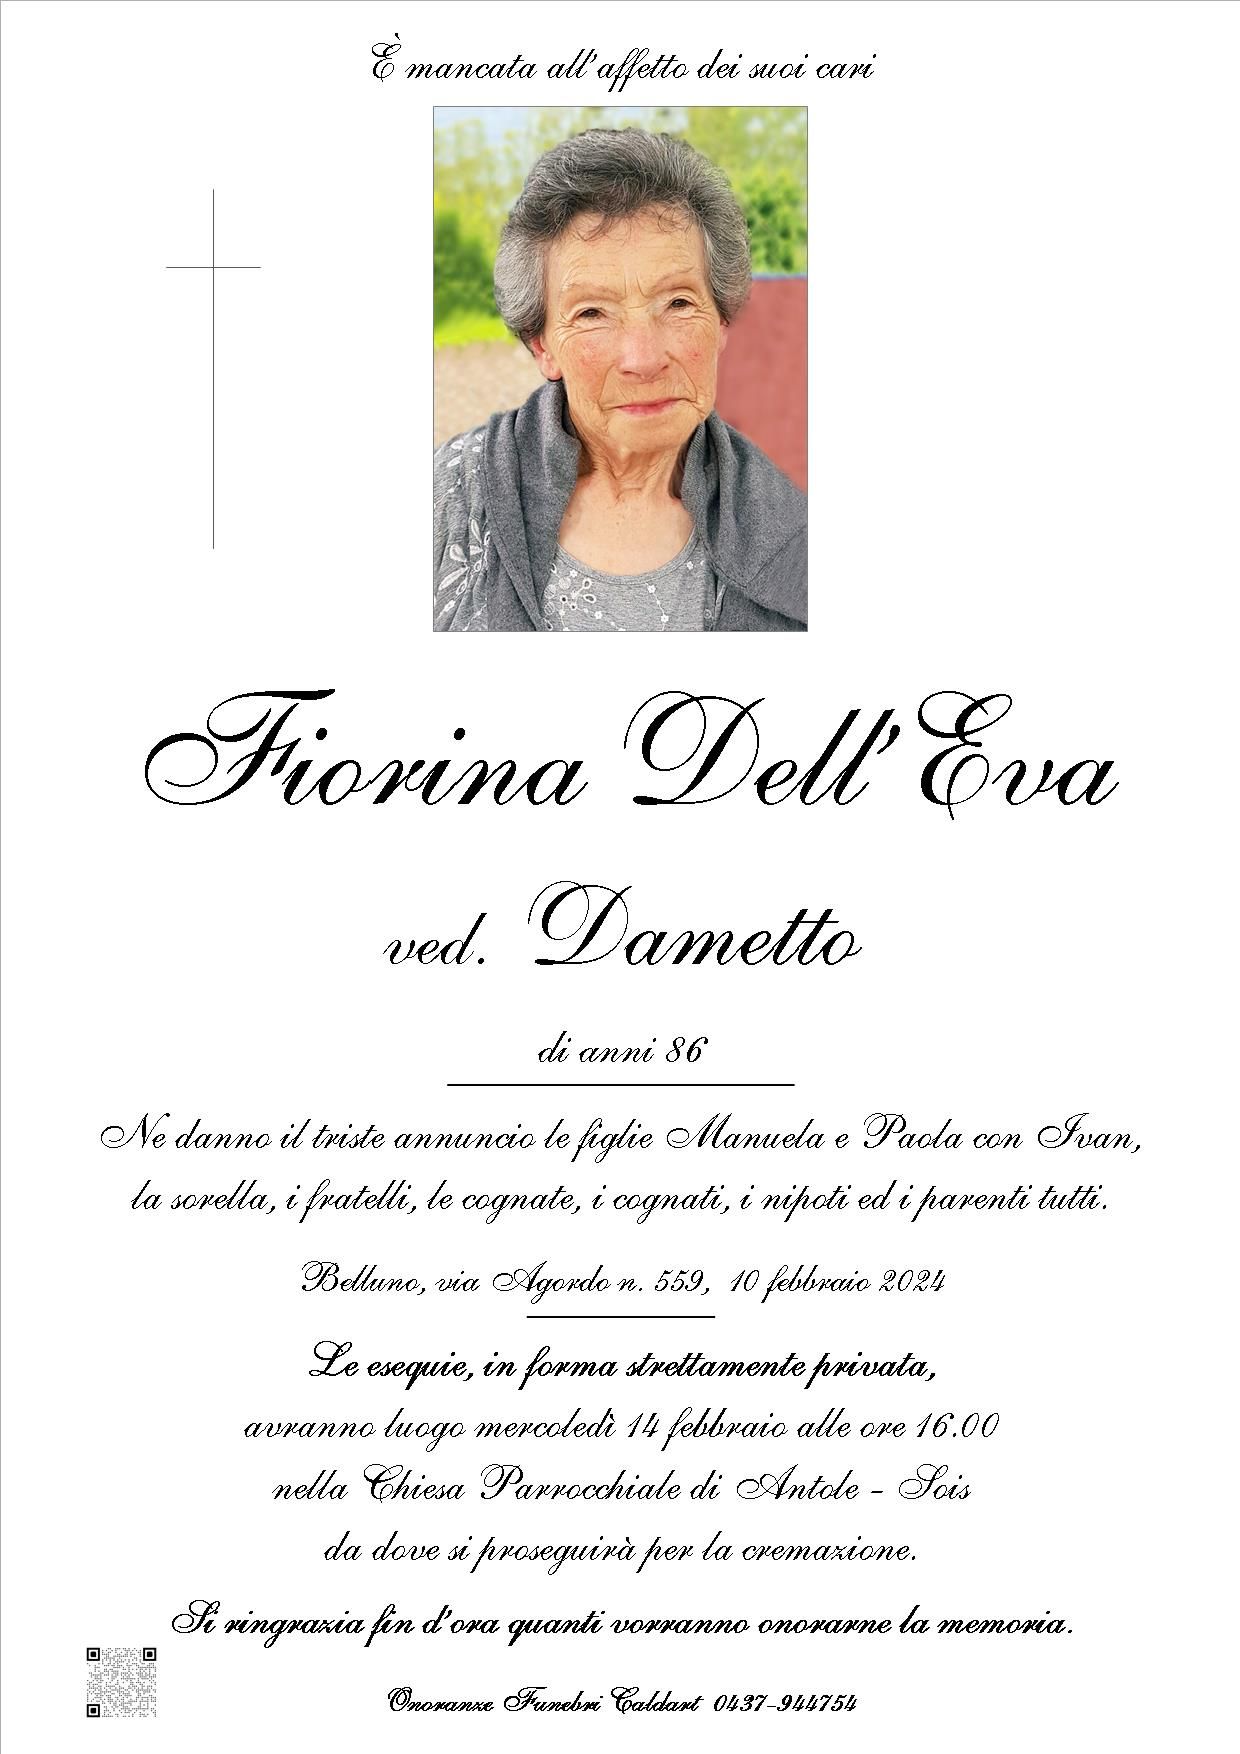 Dell'Eva Fiorina